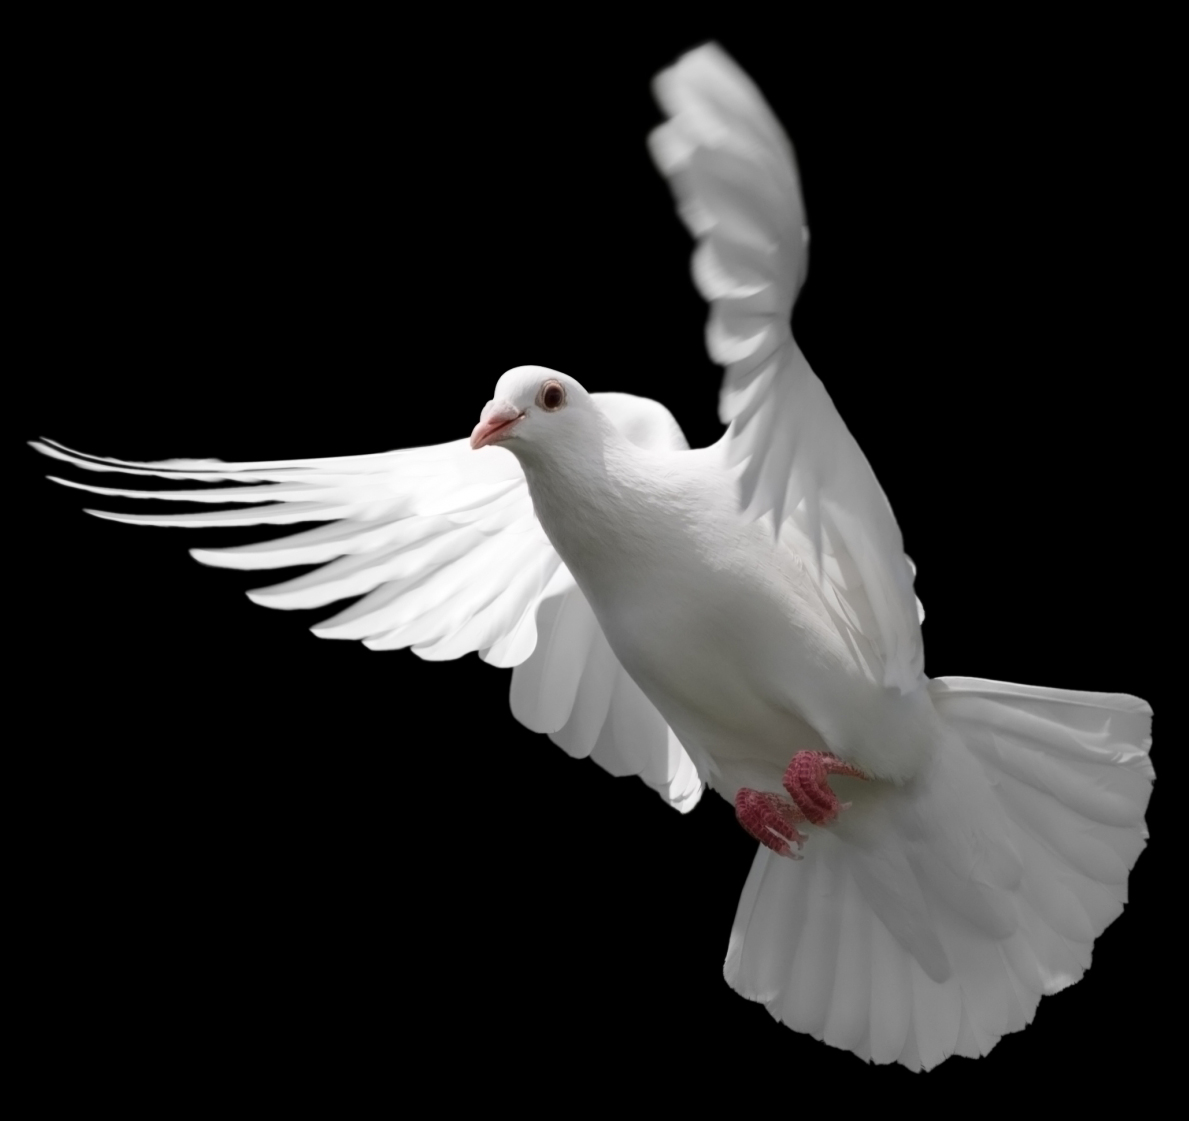 White Dove In Flight - HD Wallpaper 